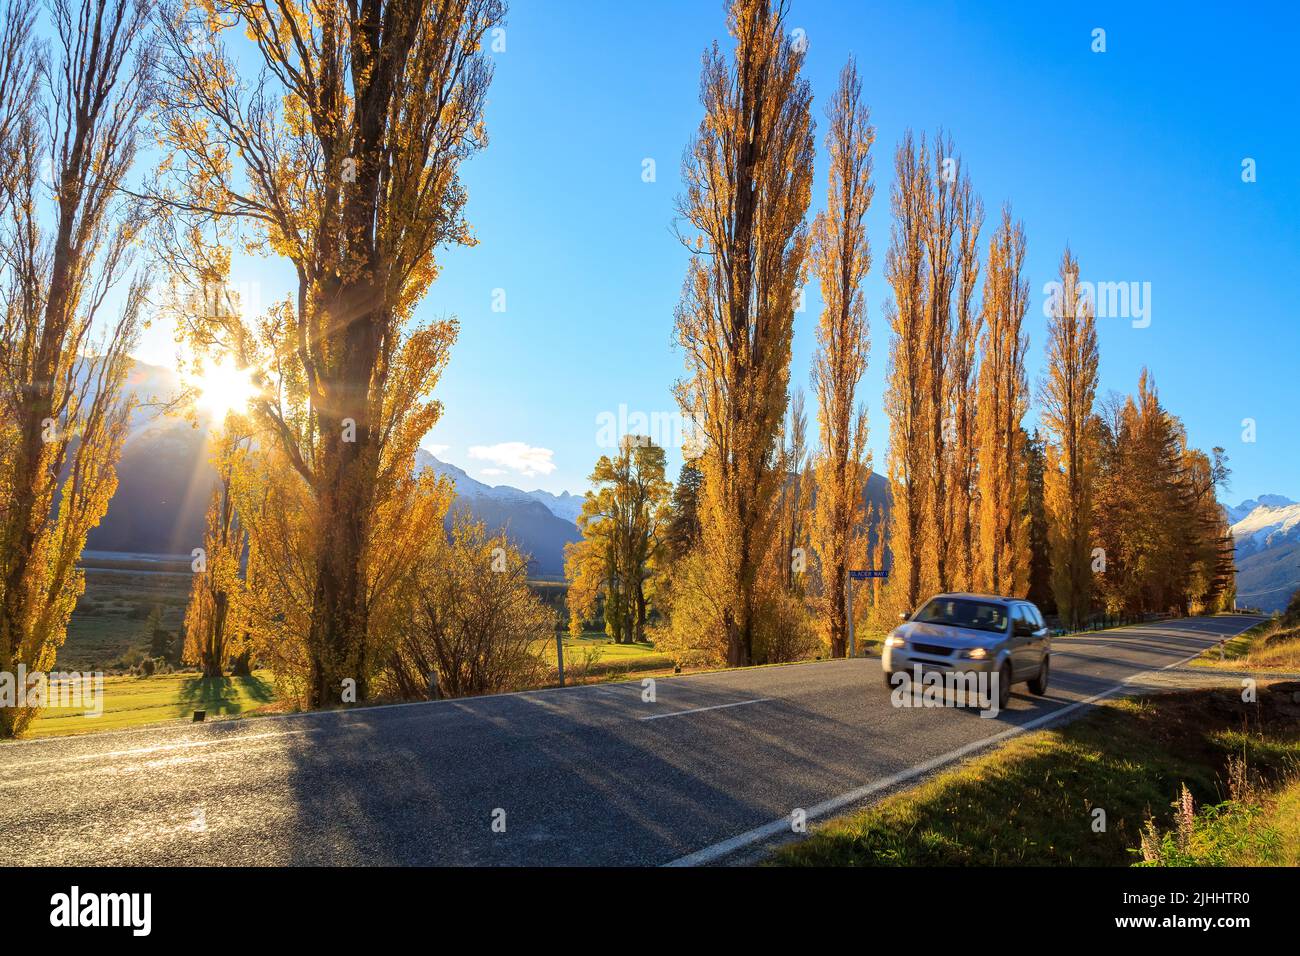 Una fila di alberi di pioppo autunnali accanto ad una strada rurale a nord di Glenorchy nella regione di Otago, Nuova Zelanda Foto Stock